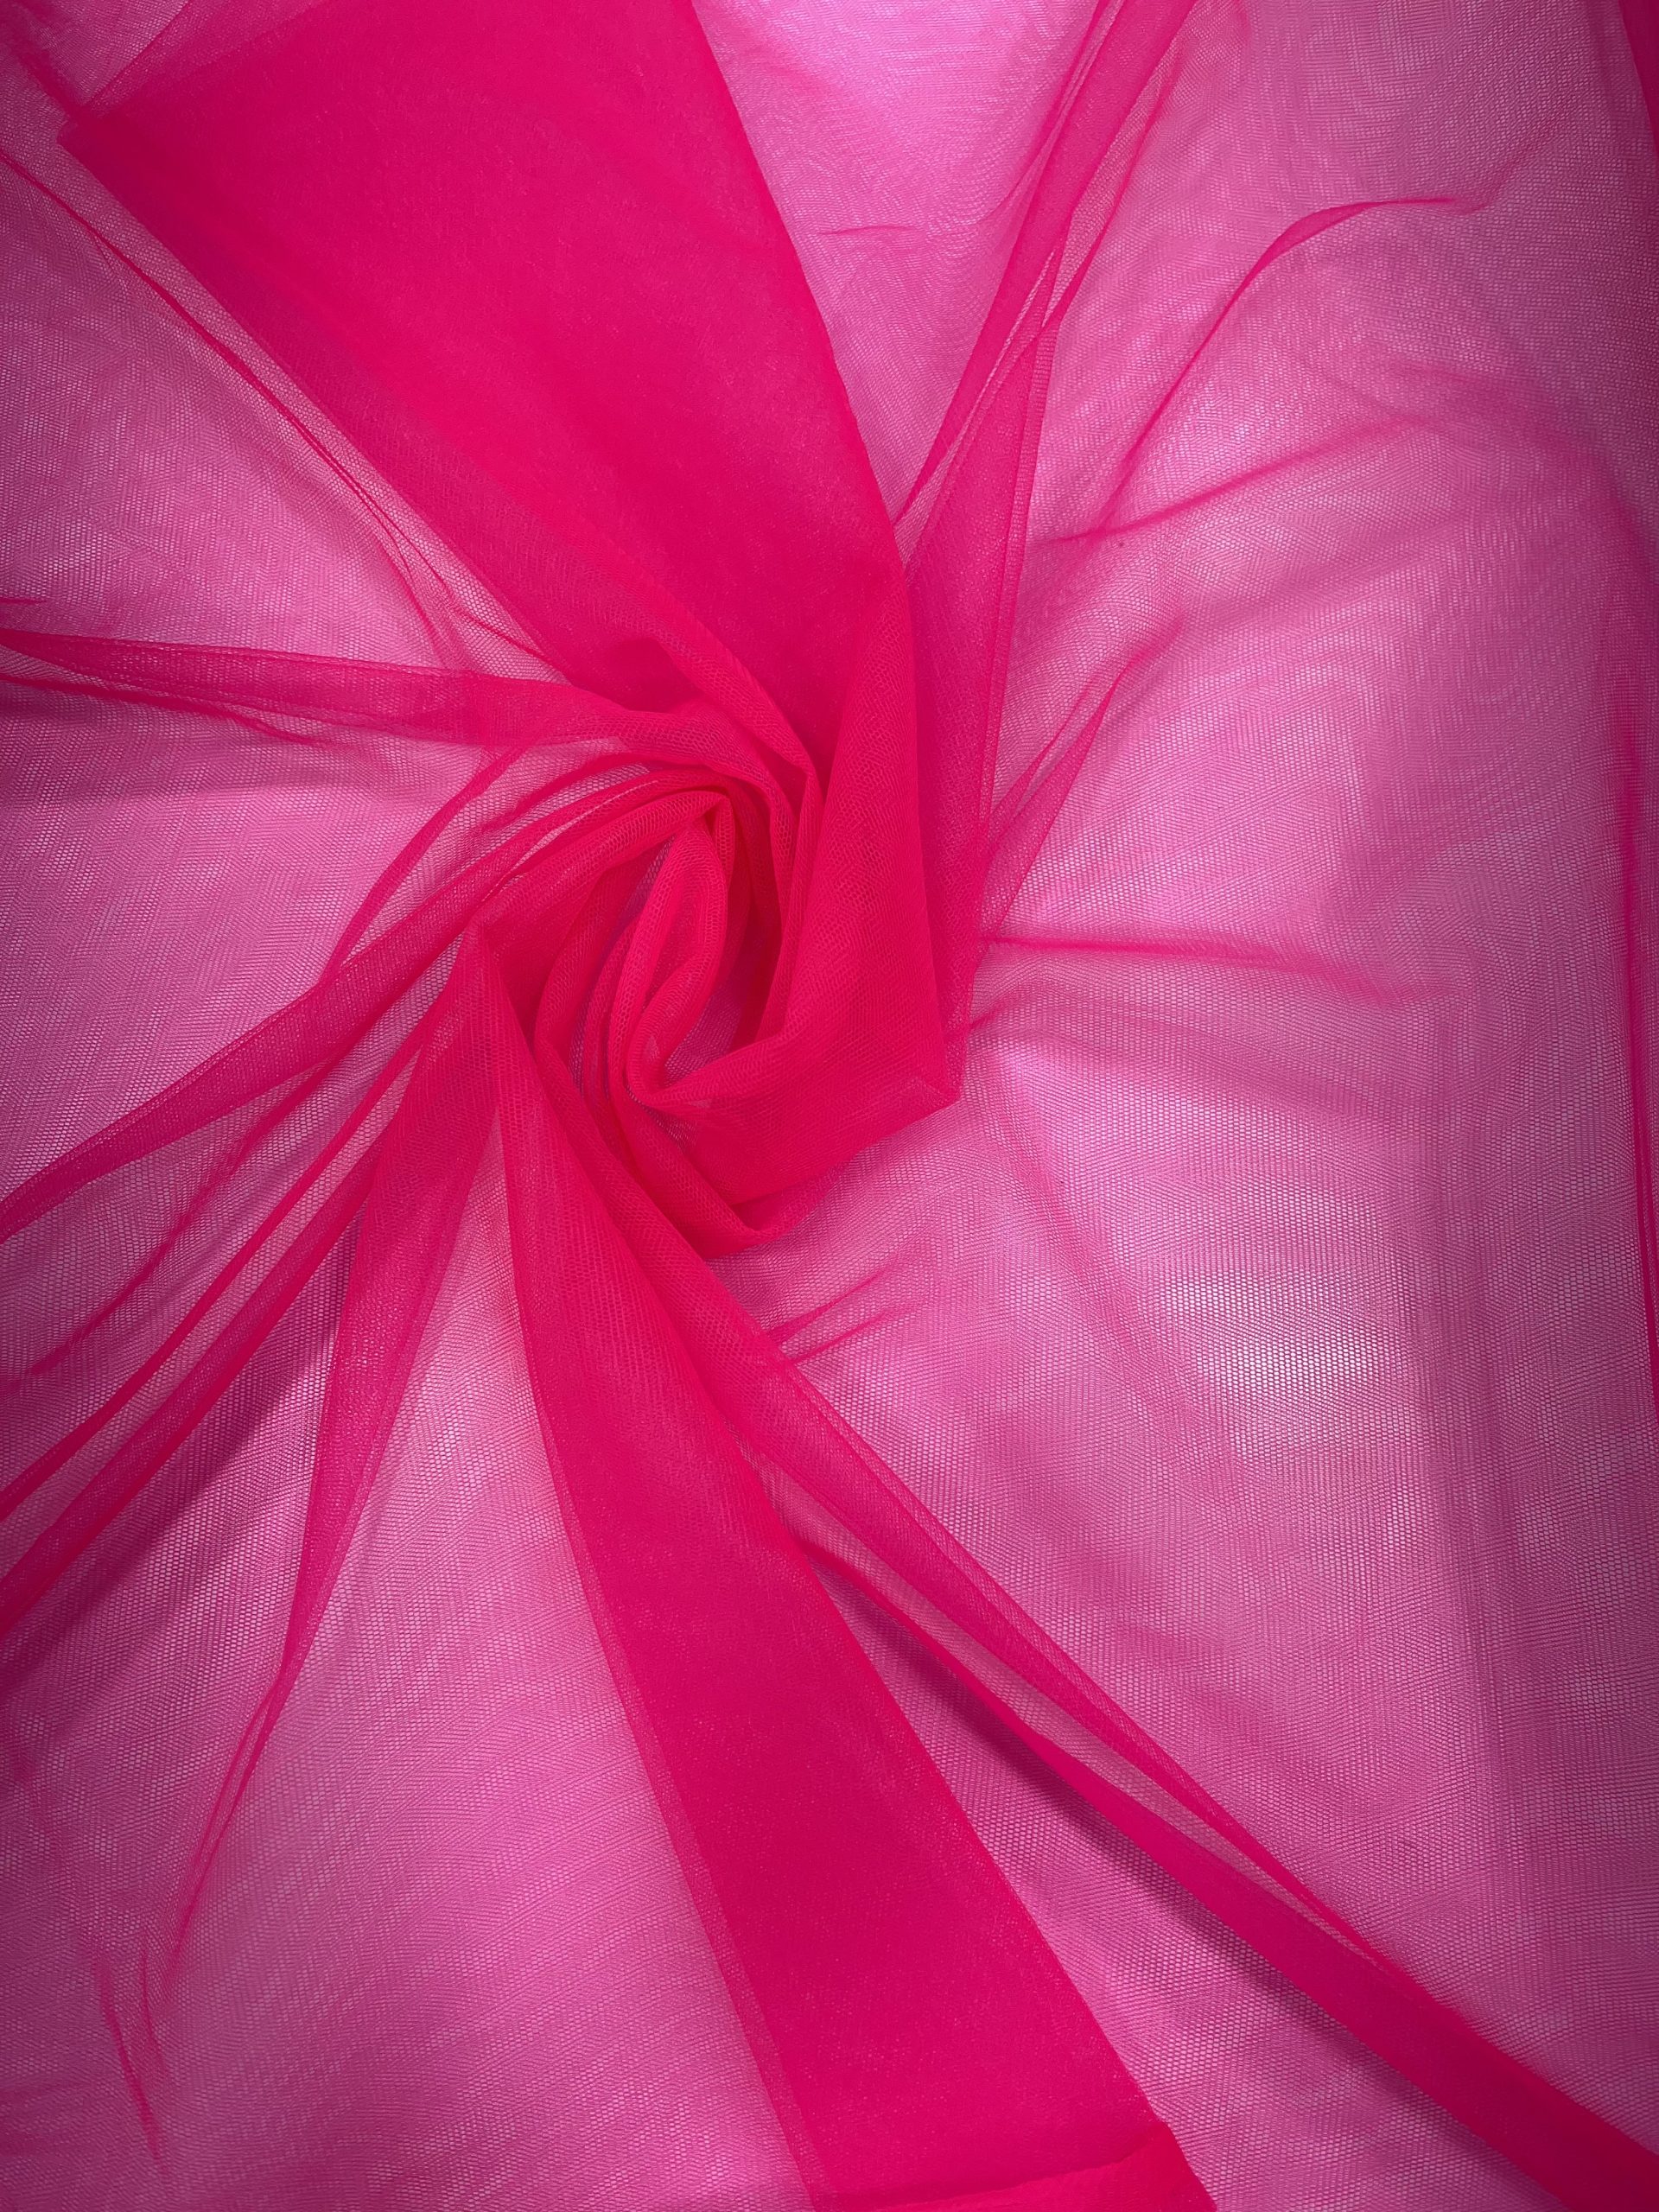 Hot Pink Soft Net Fabric